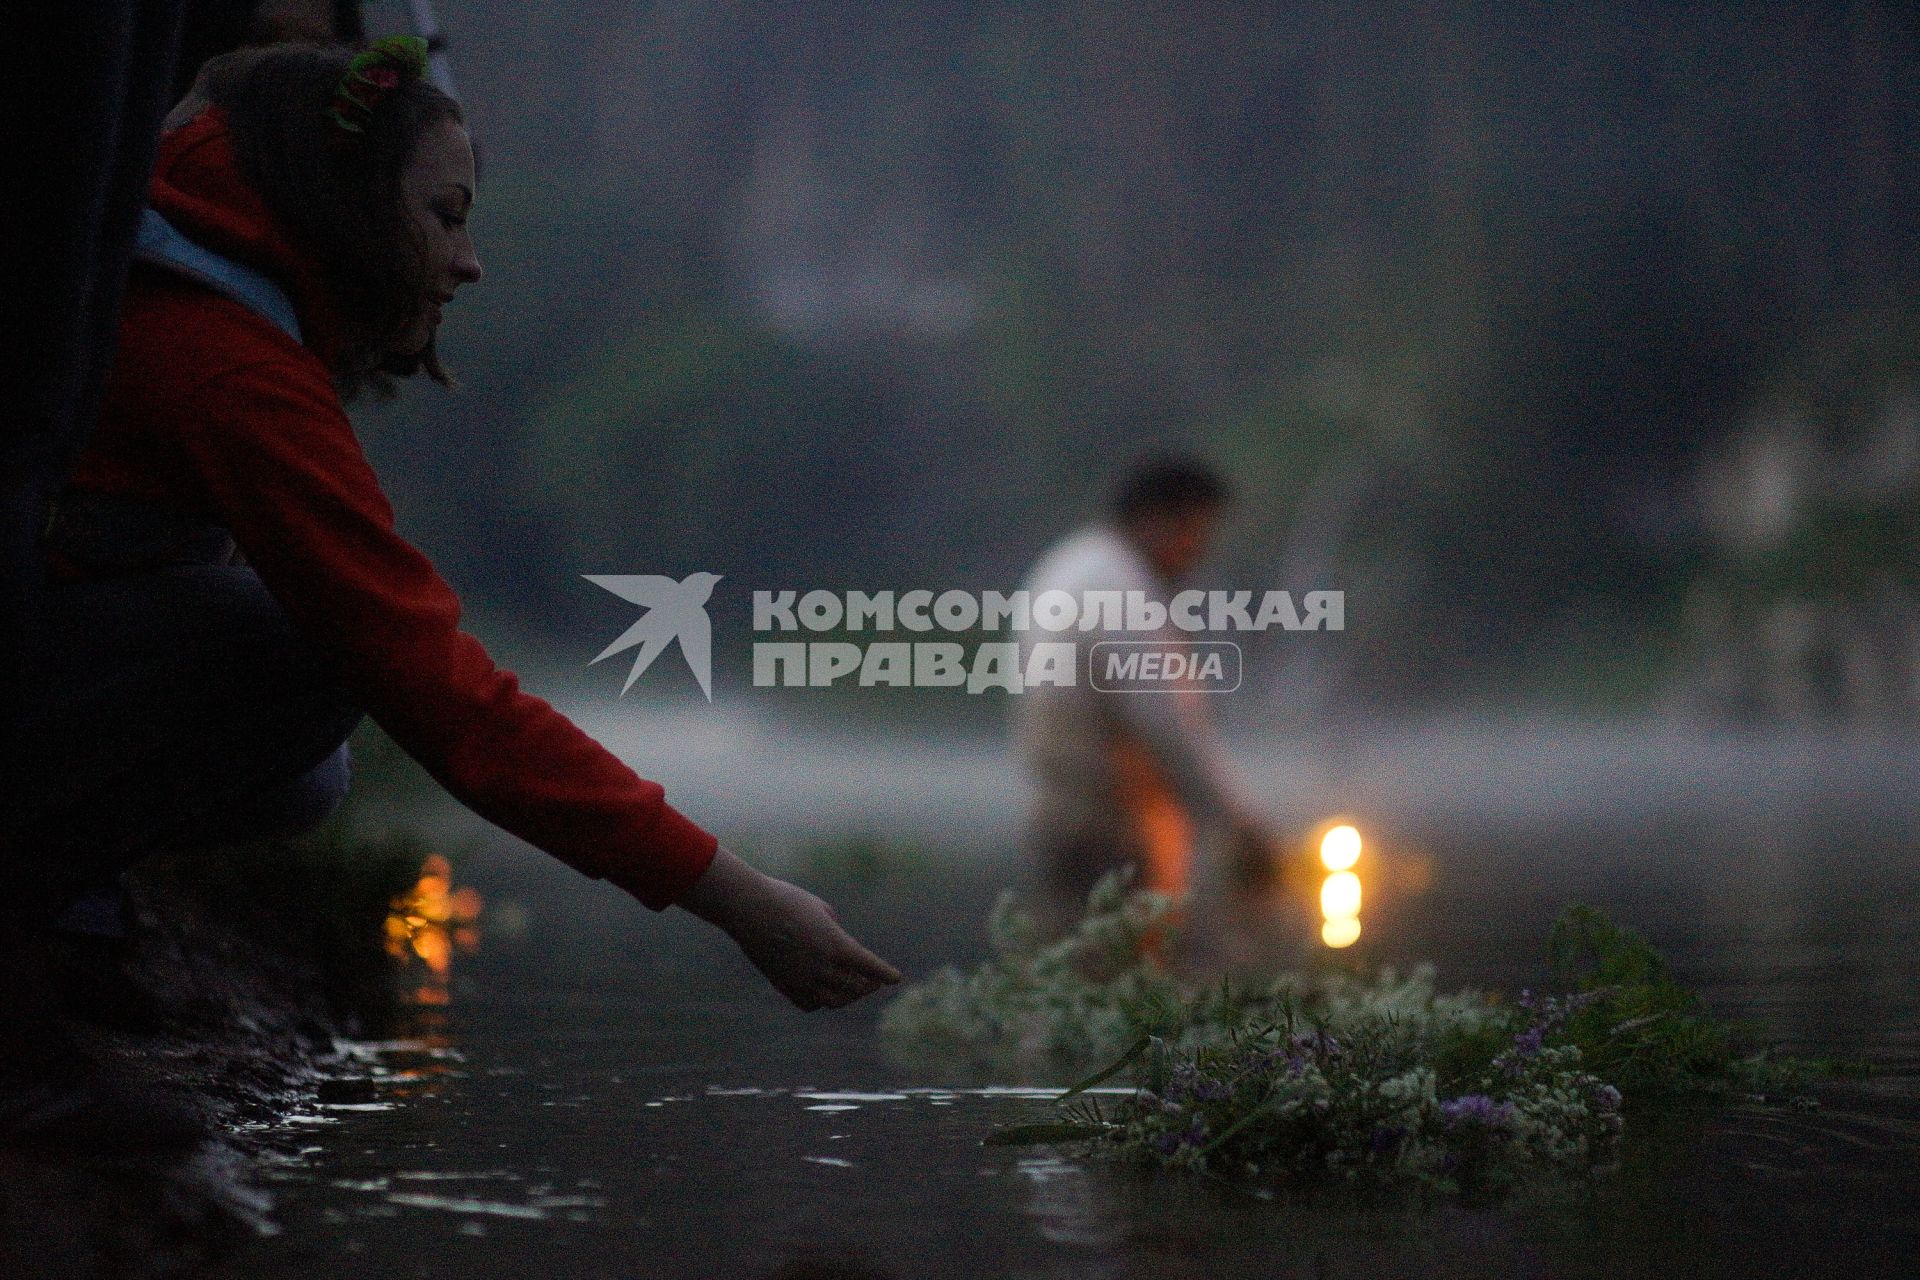 Девушкаво время  празднования дня Ивана Купала спускает на воду венок из цветов